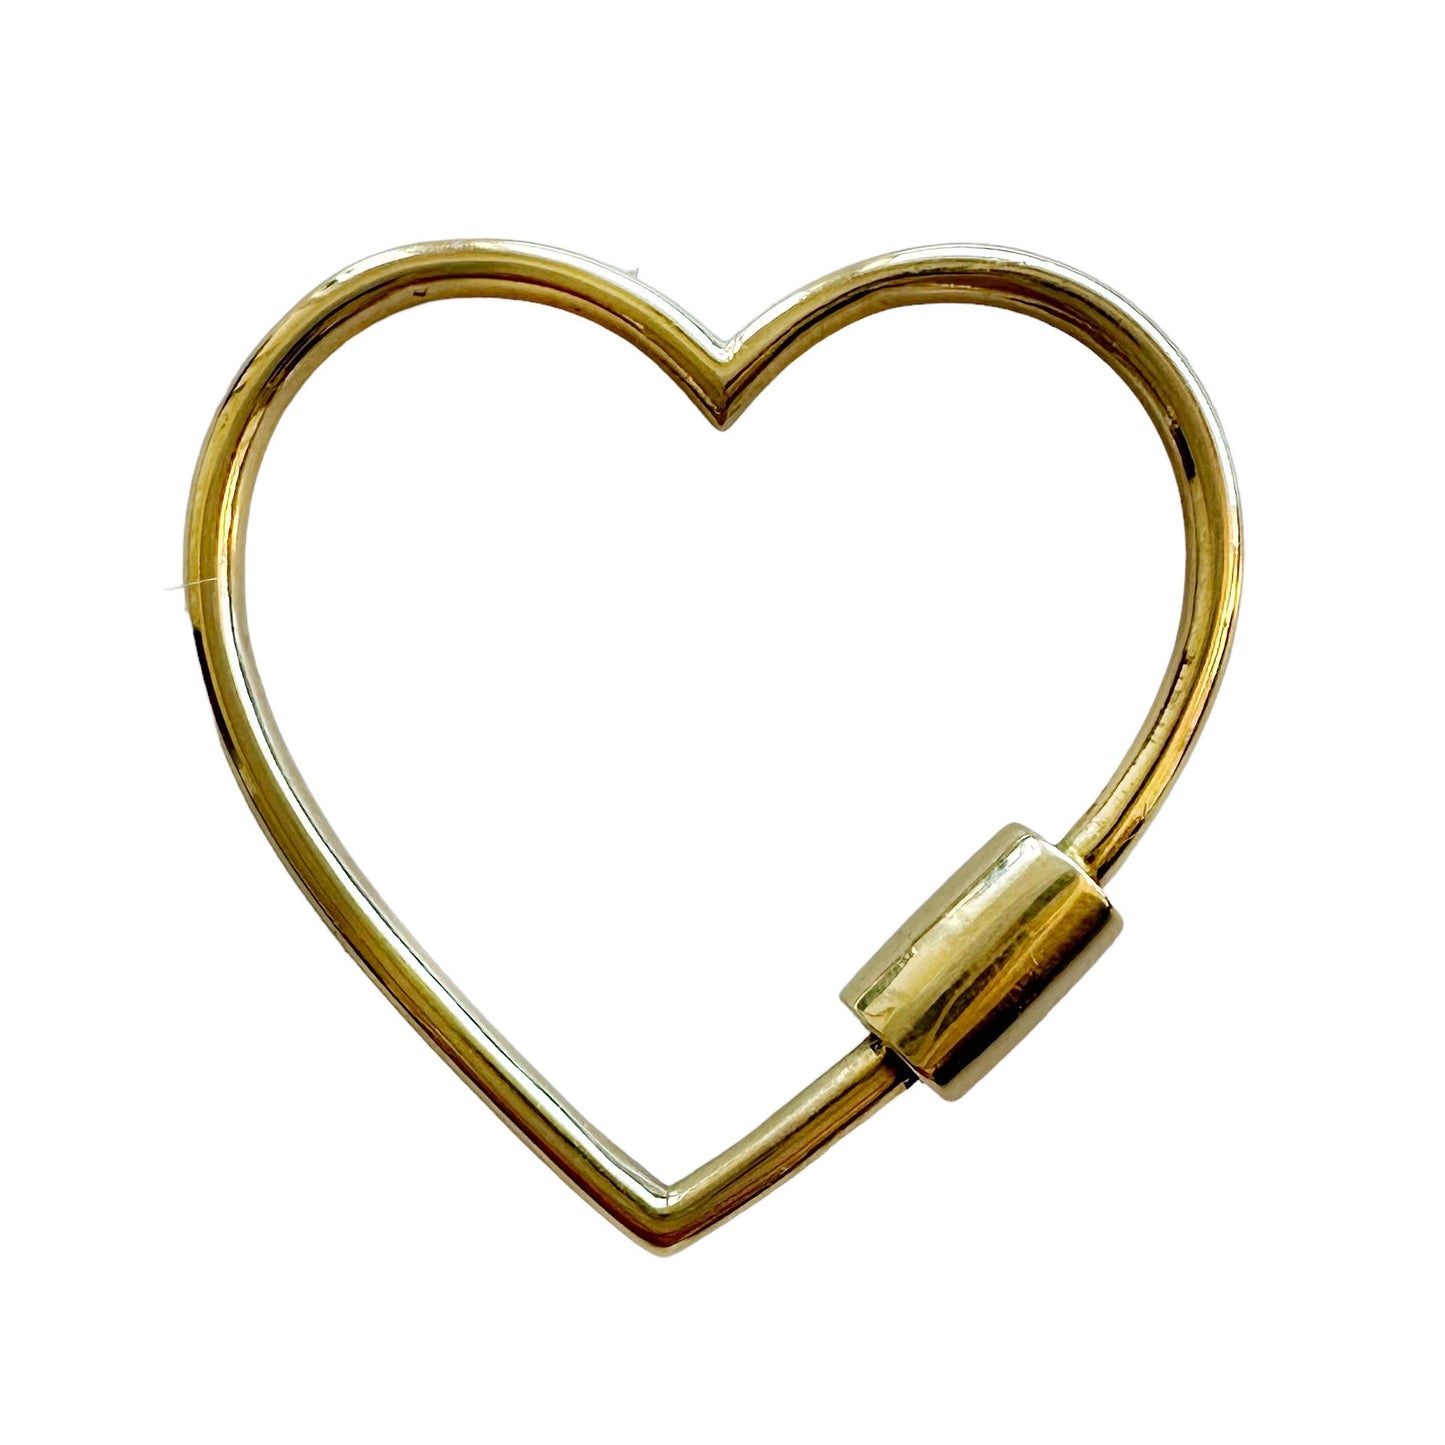 Heart Carabiner Connector